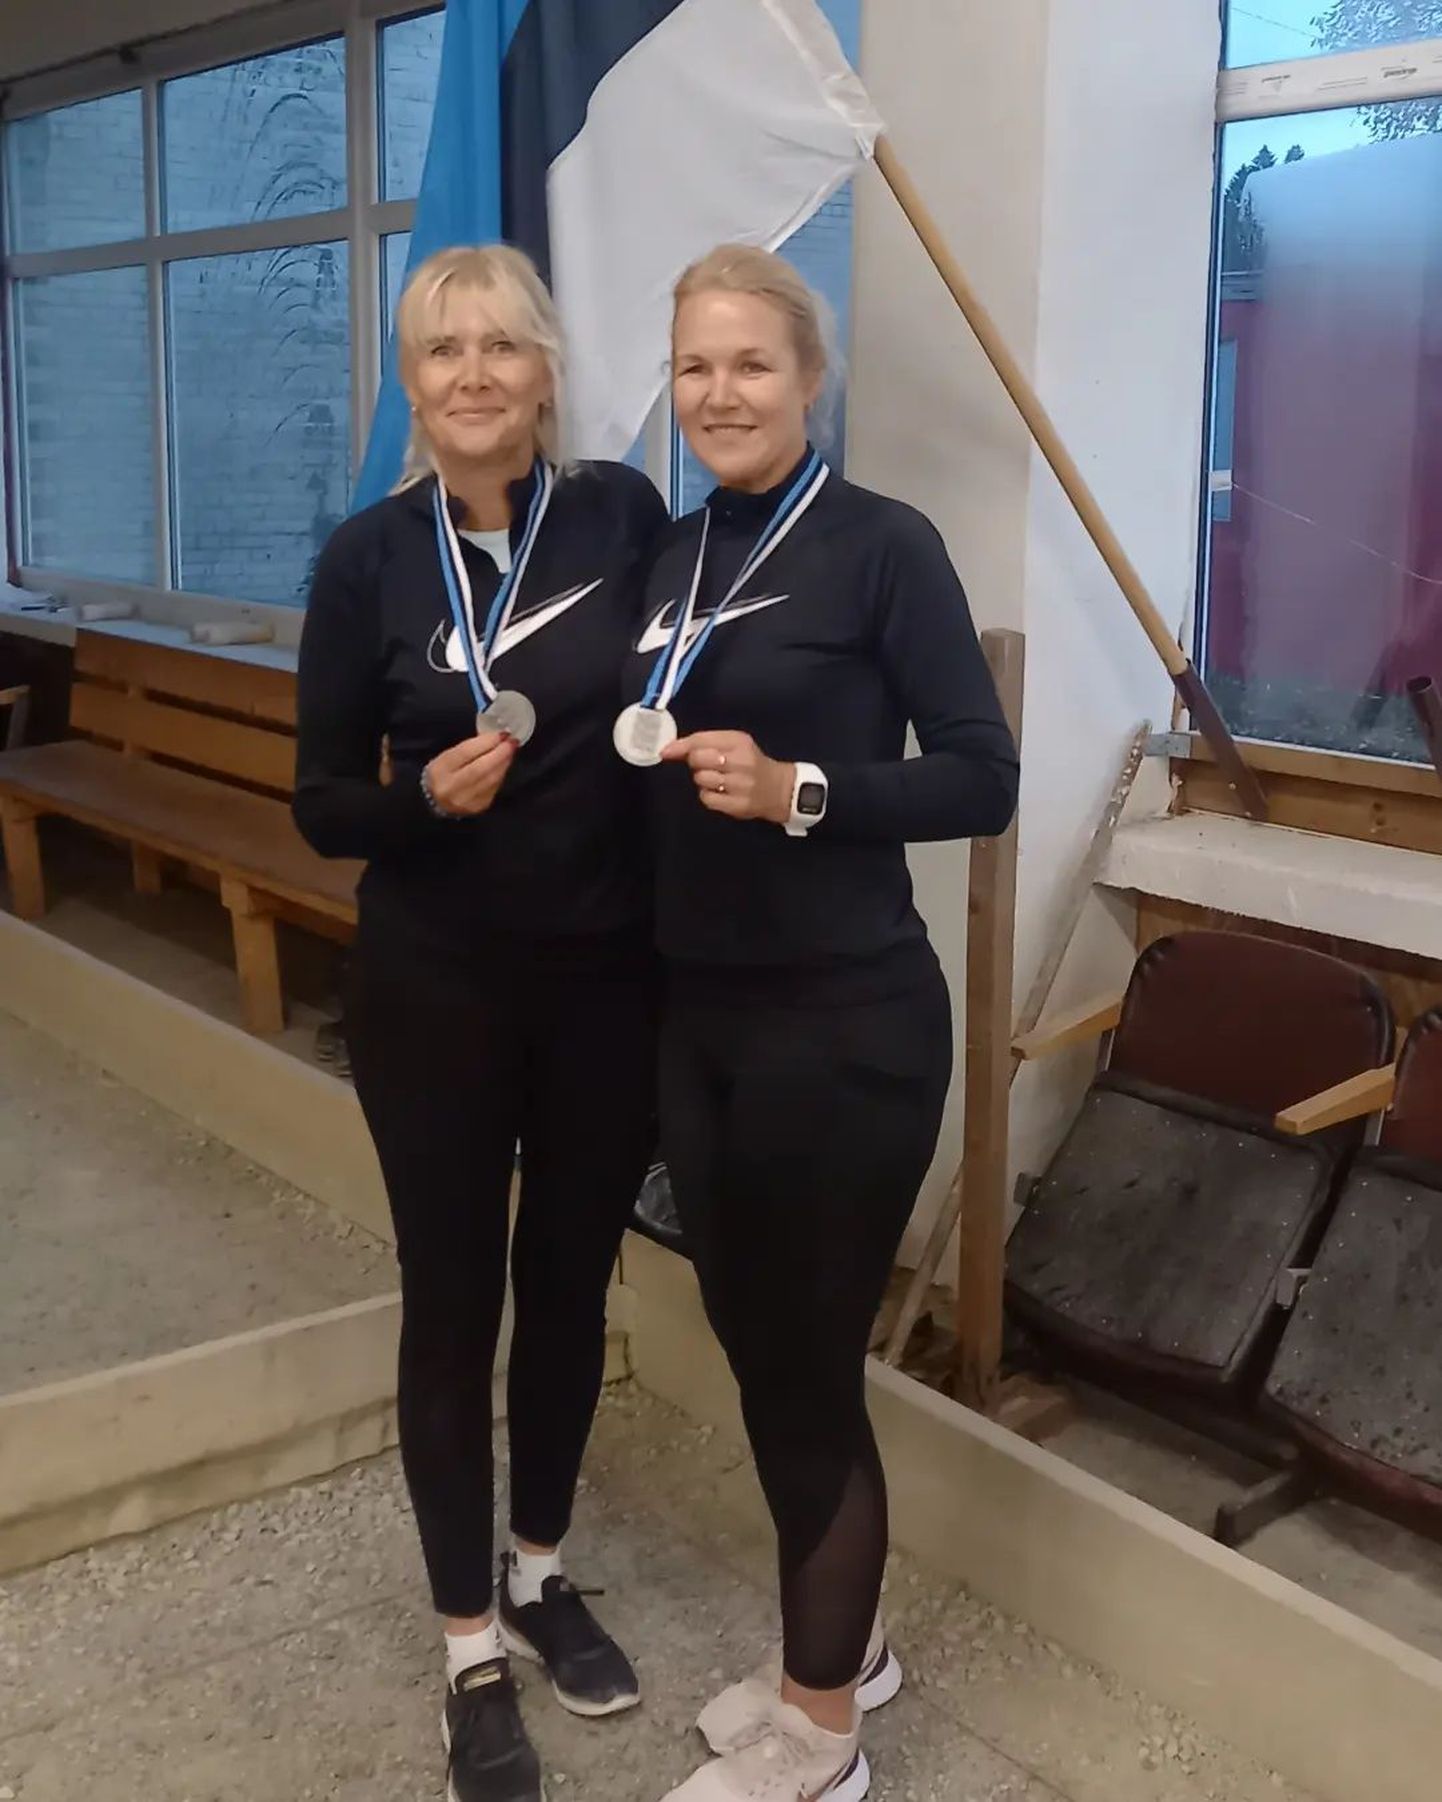 Anneli Suits (vasakul) ja Veroonika Saar saavutasid Eesti esimestel naispaaride petanki meistrivõistlusel hinnalise teise koha.